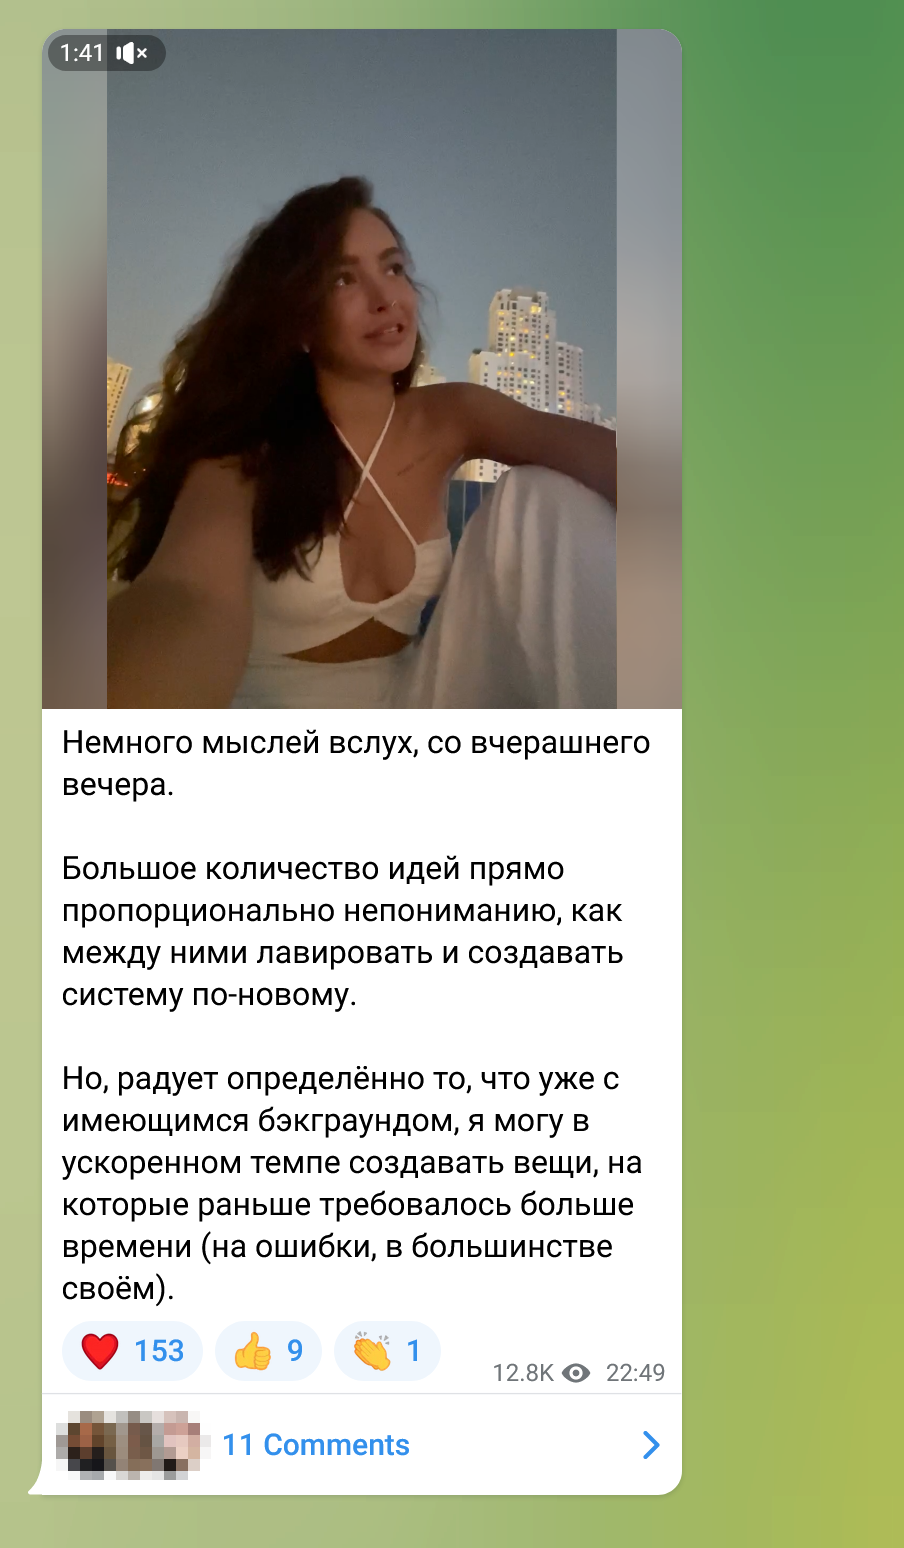 У блогерки Вероники Логиновой только около 25 000 подписчиков в «Телеграме», это в 20 раз меньше, чем в другой ее соцсети